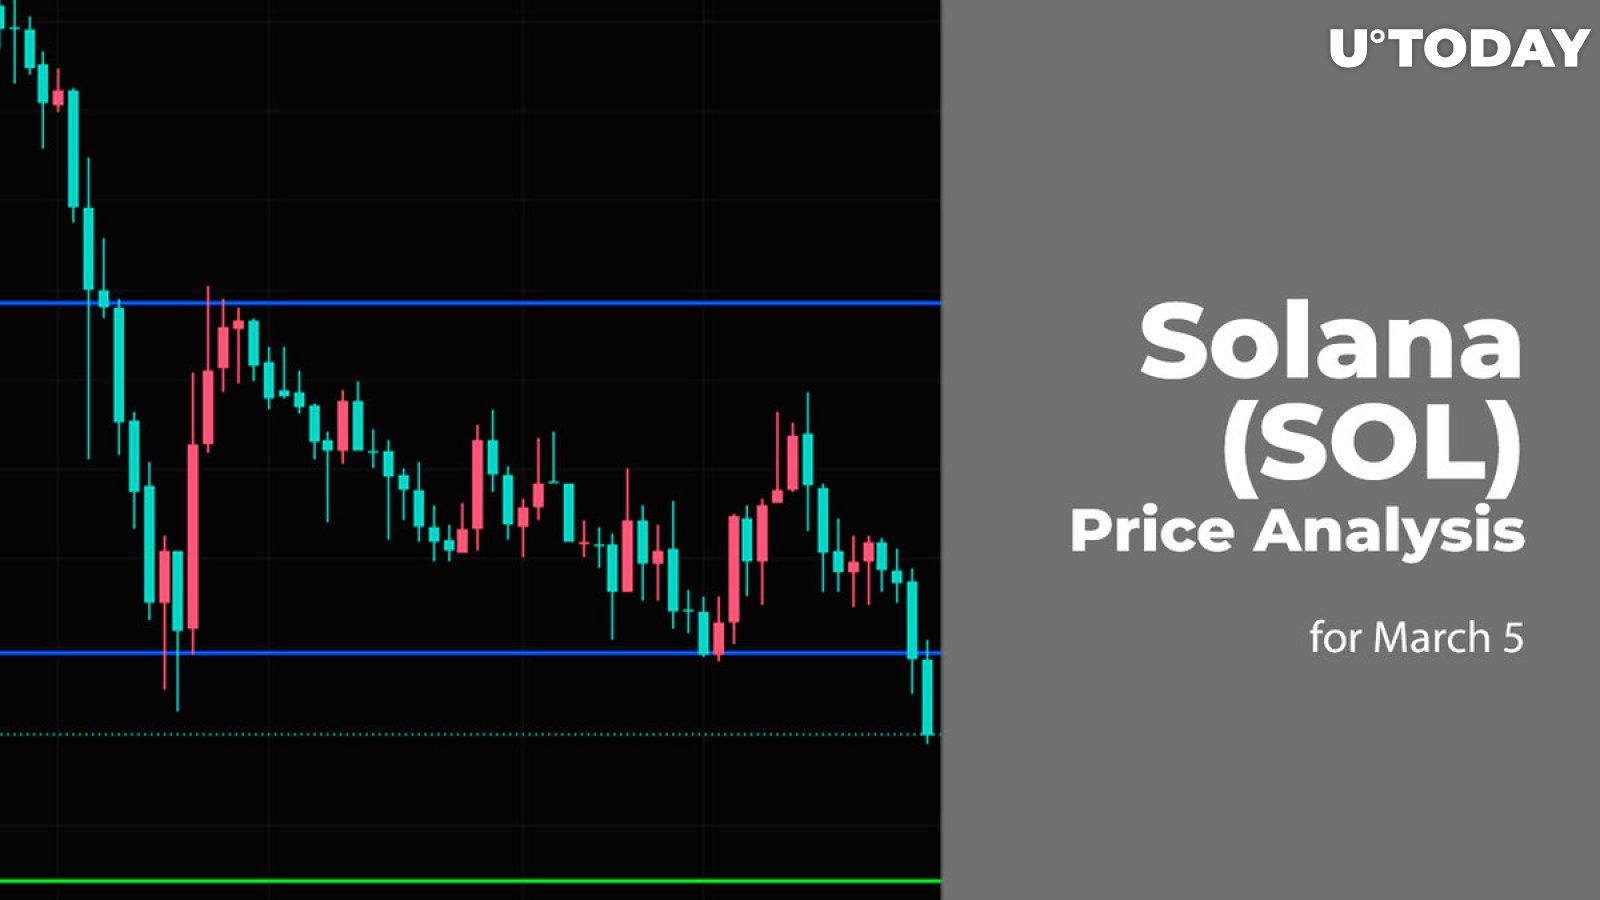 Solana (SOL) Price Prediction for March 5